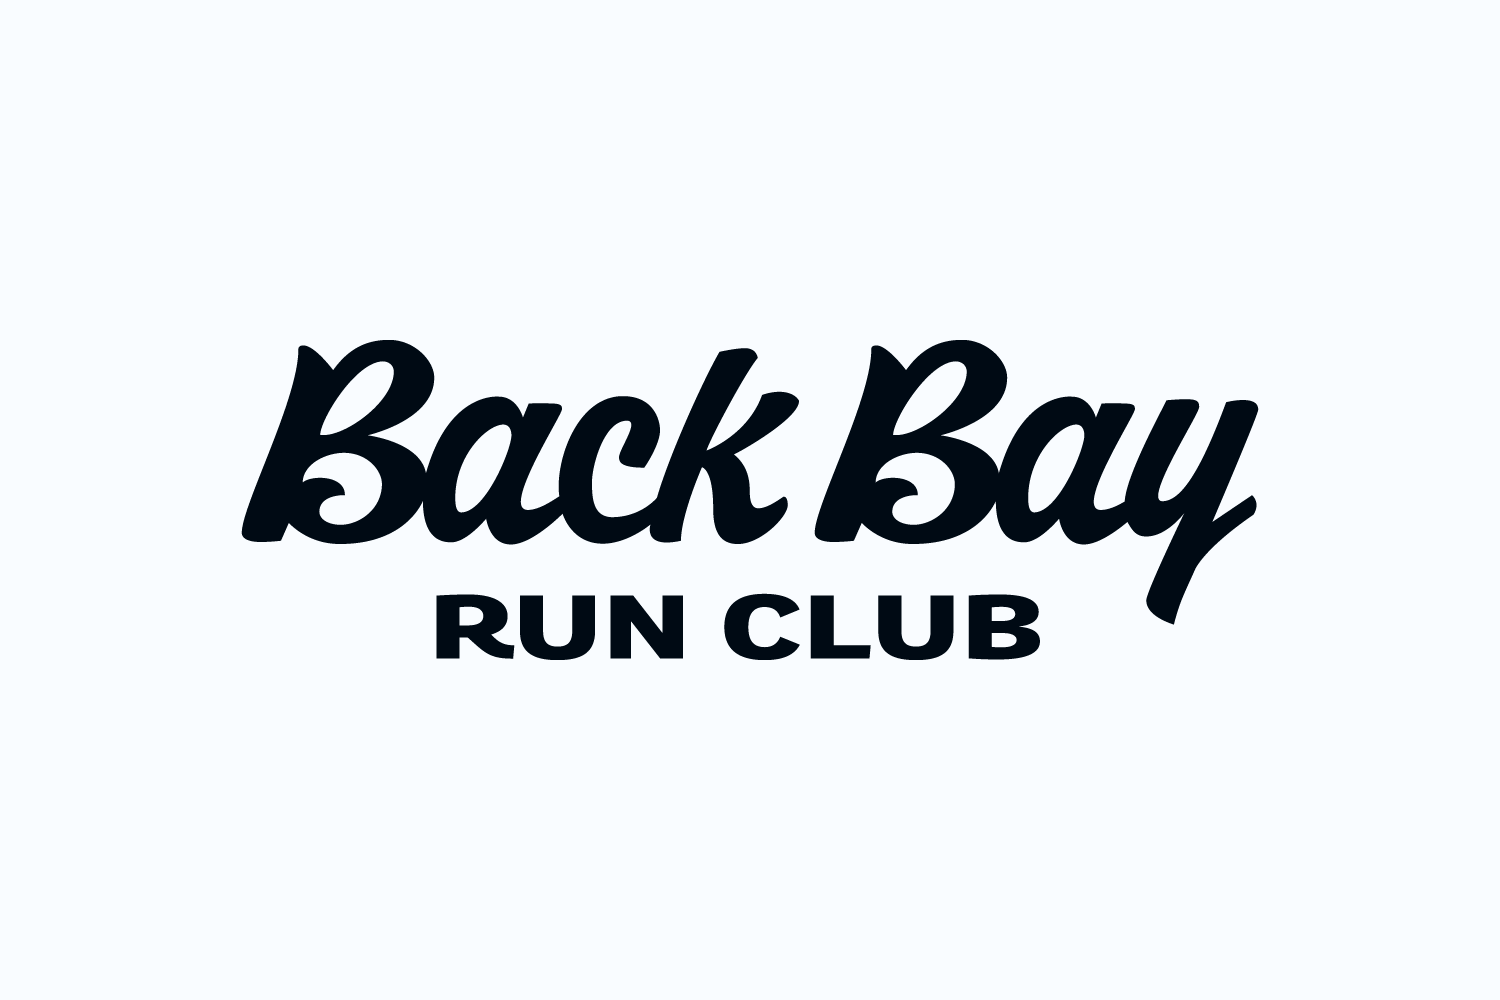 Back Bay Run Club wordmark